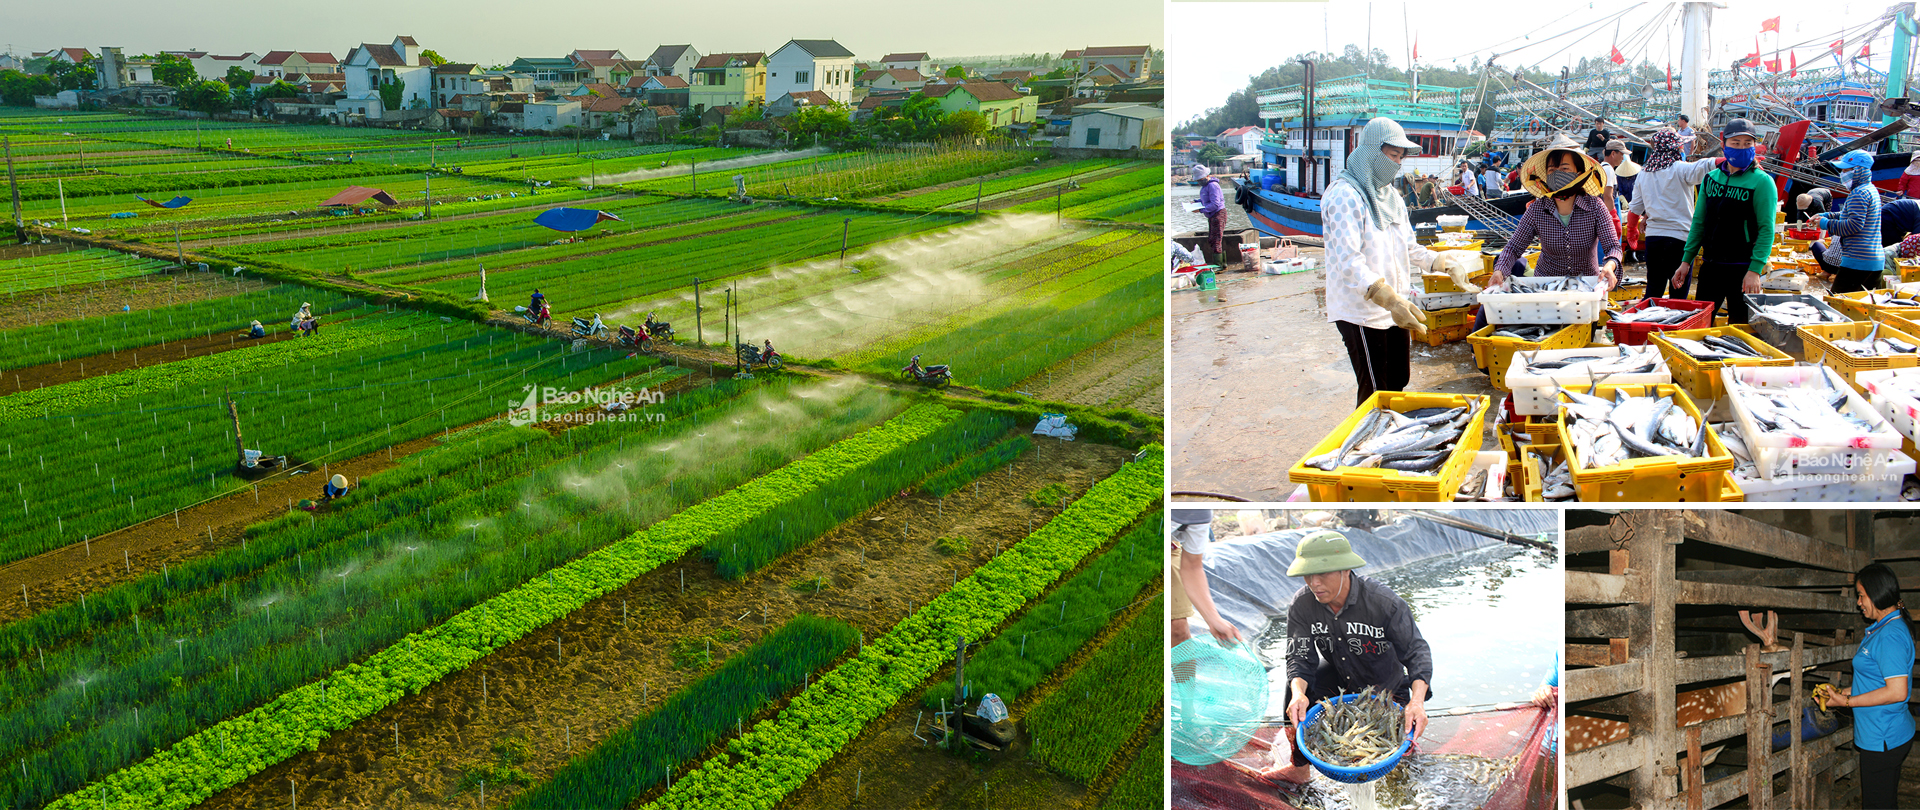 Làng rau màu ở Quỳnh Lương; Ngư dân Quỳnh Lưu được mùa cá; Thu hoạch tôm; Nghề nuôi hươu lấy lộc truyền thống ở Quỳnh Lưu.